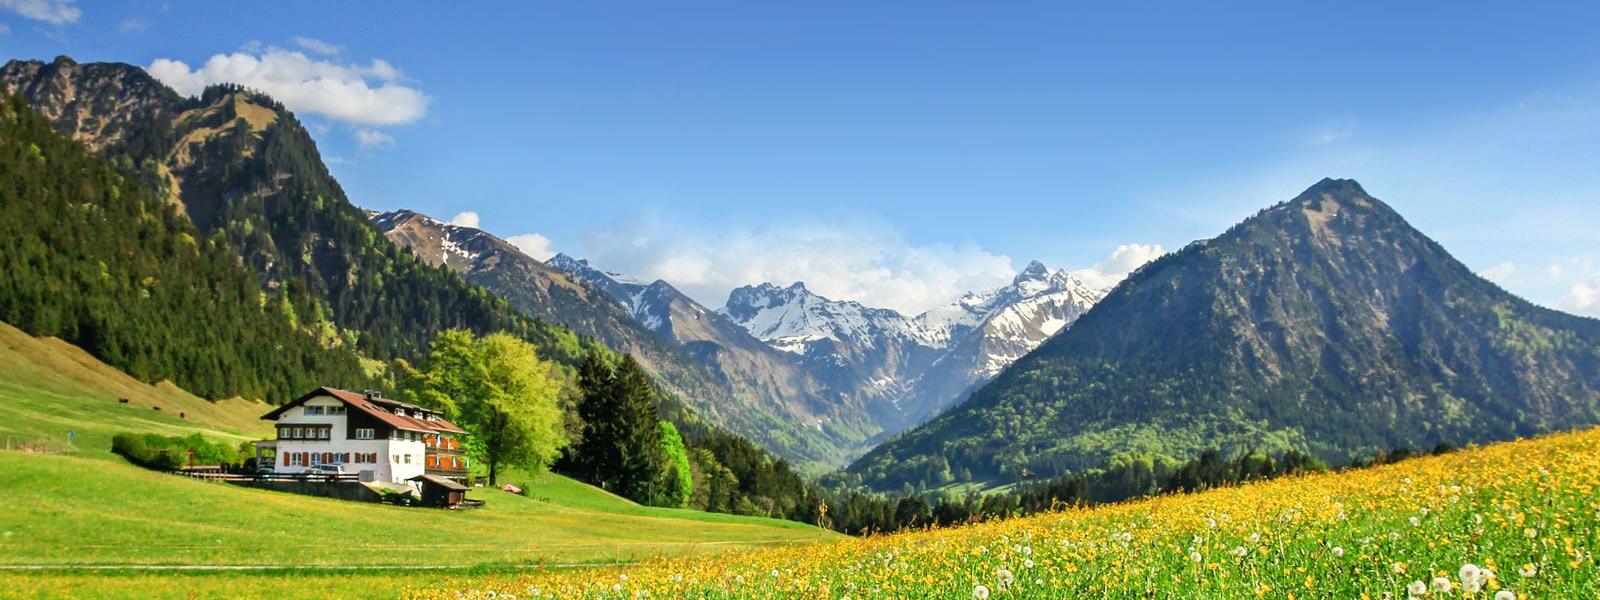 Allgäuer Landschaft mit Blumenwiese vor schneebedeckten Bergen